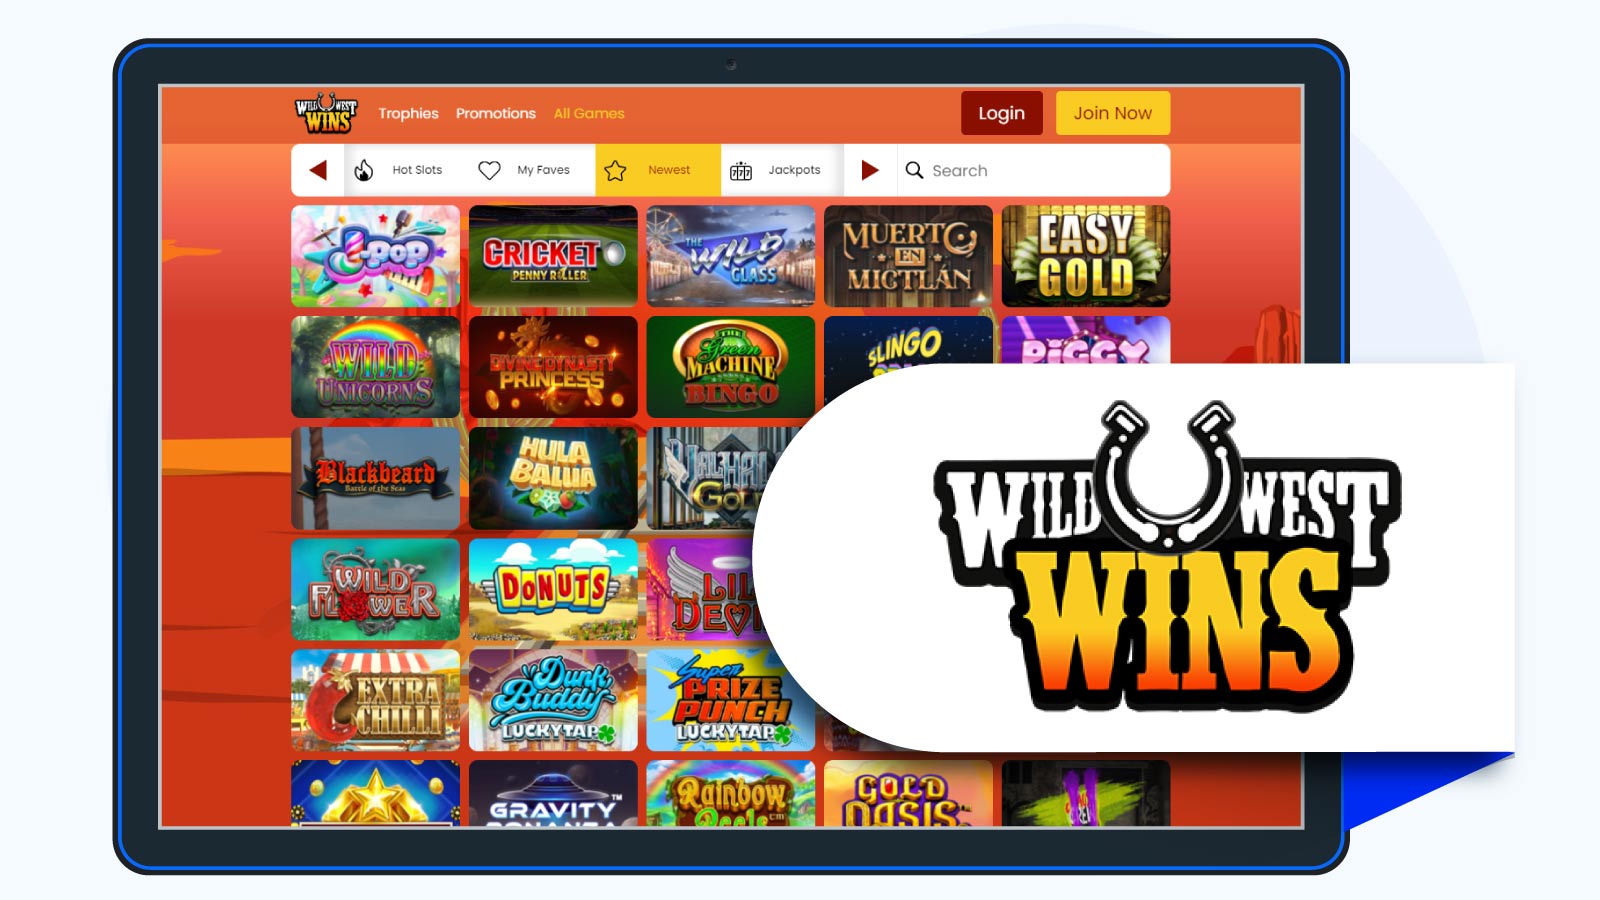 Wild West Wins Casino- Must-Redeem 20 Free Spins No Deposit Bonus